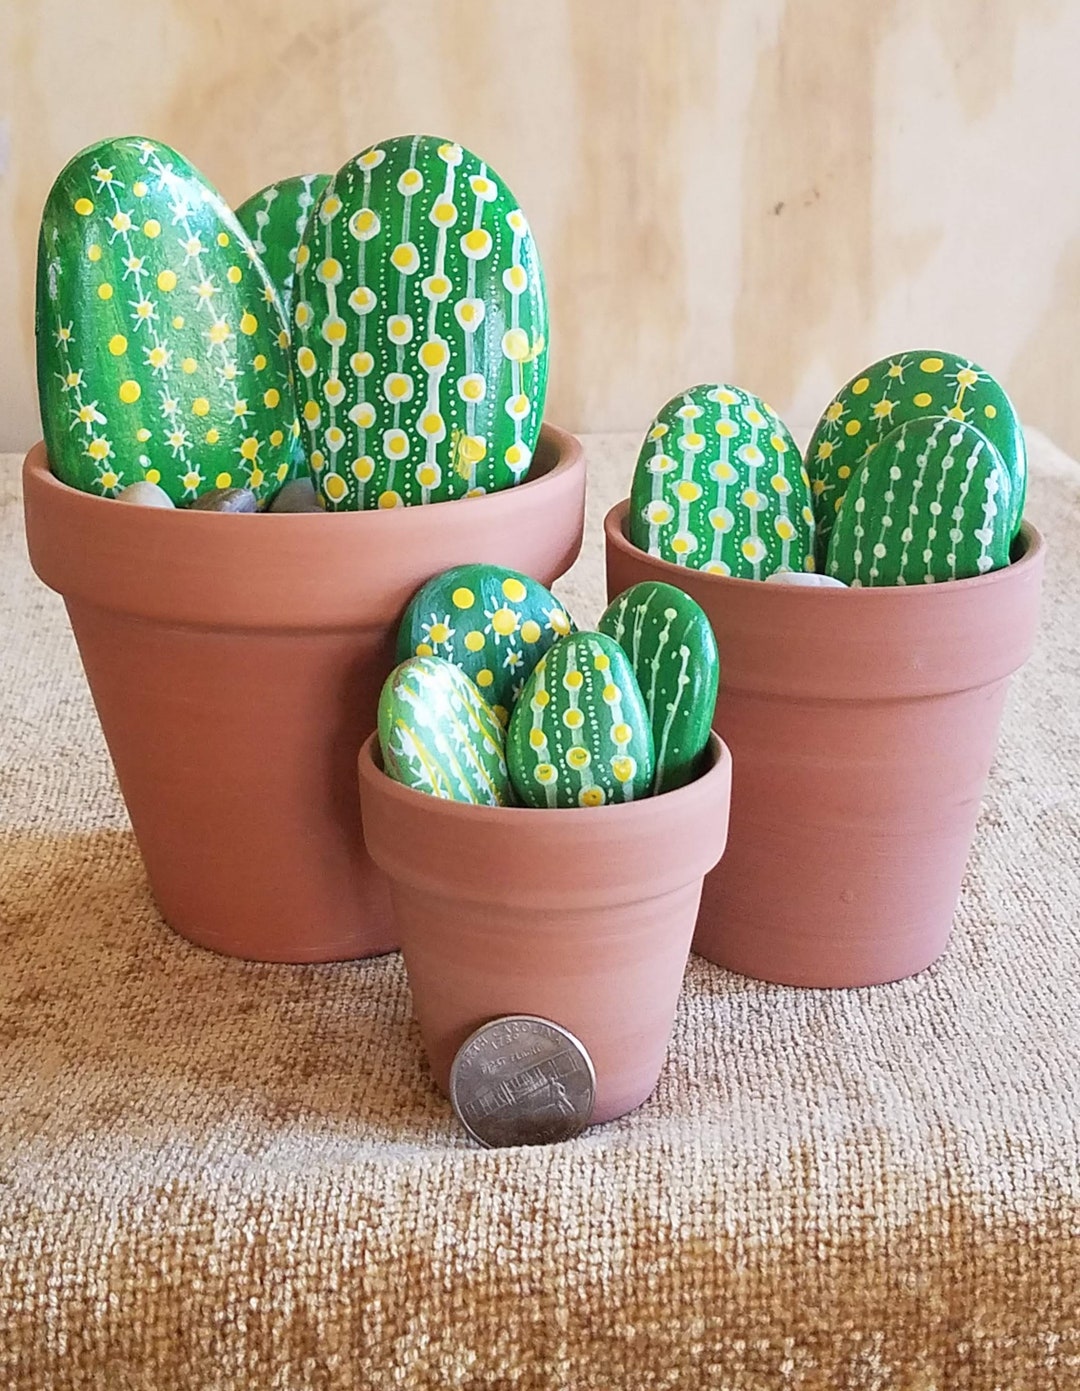 Pet Cactus Rocks - The Best Ideas for Kids